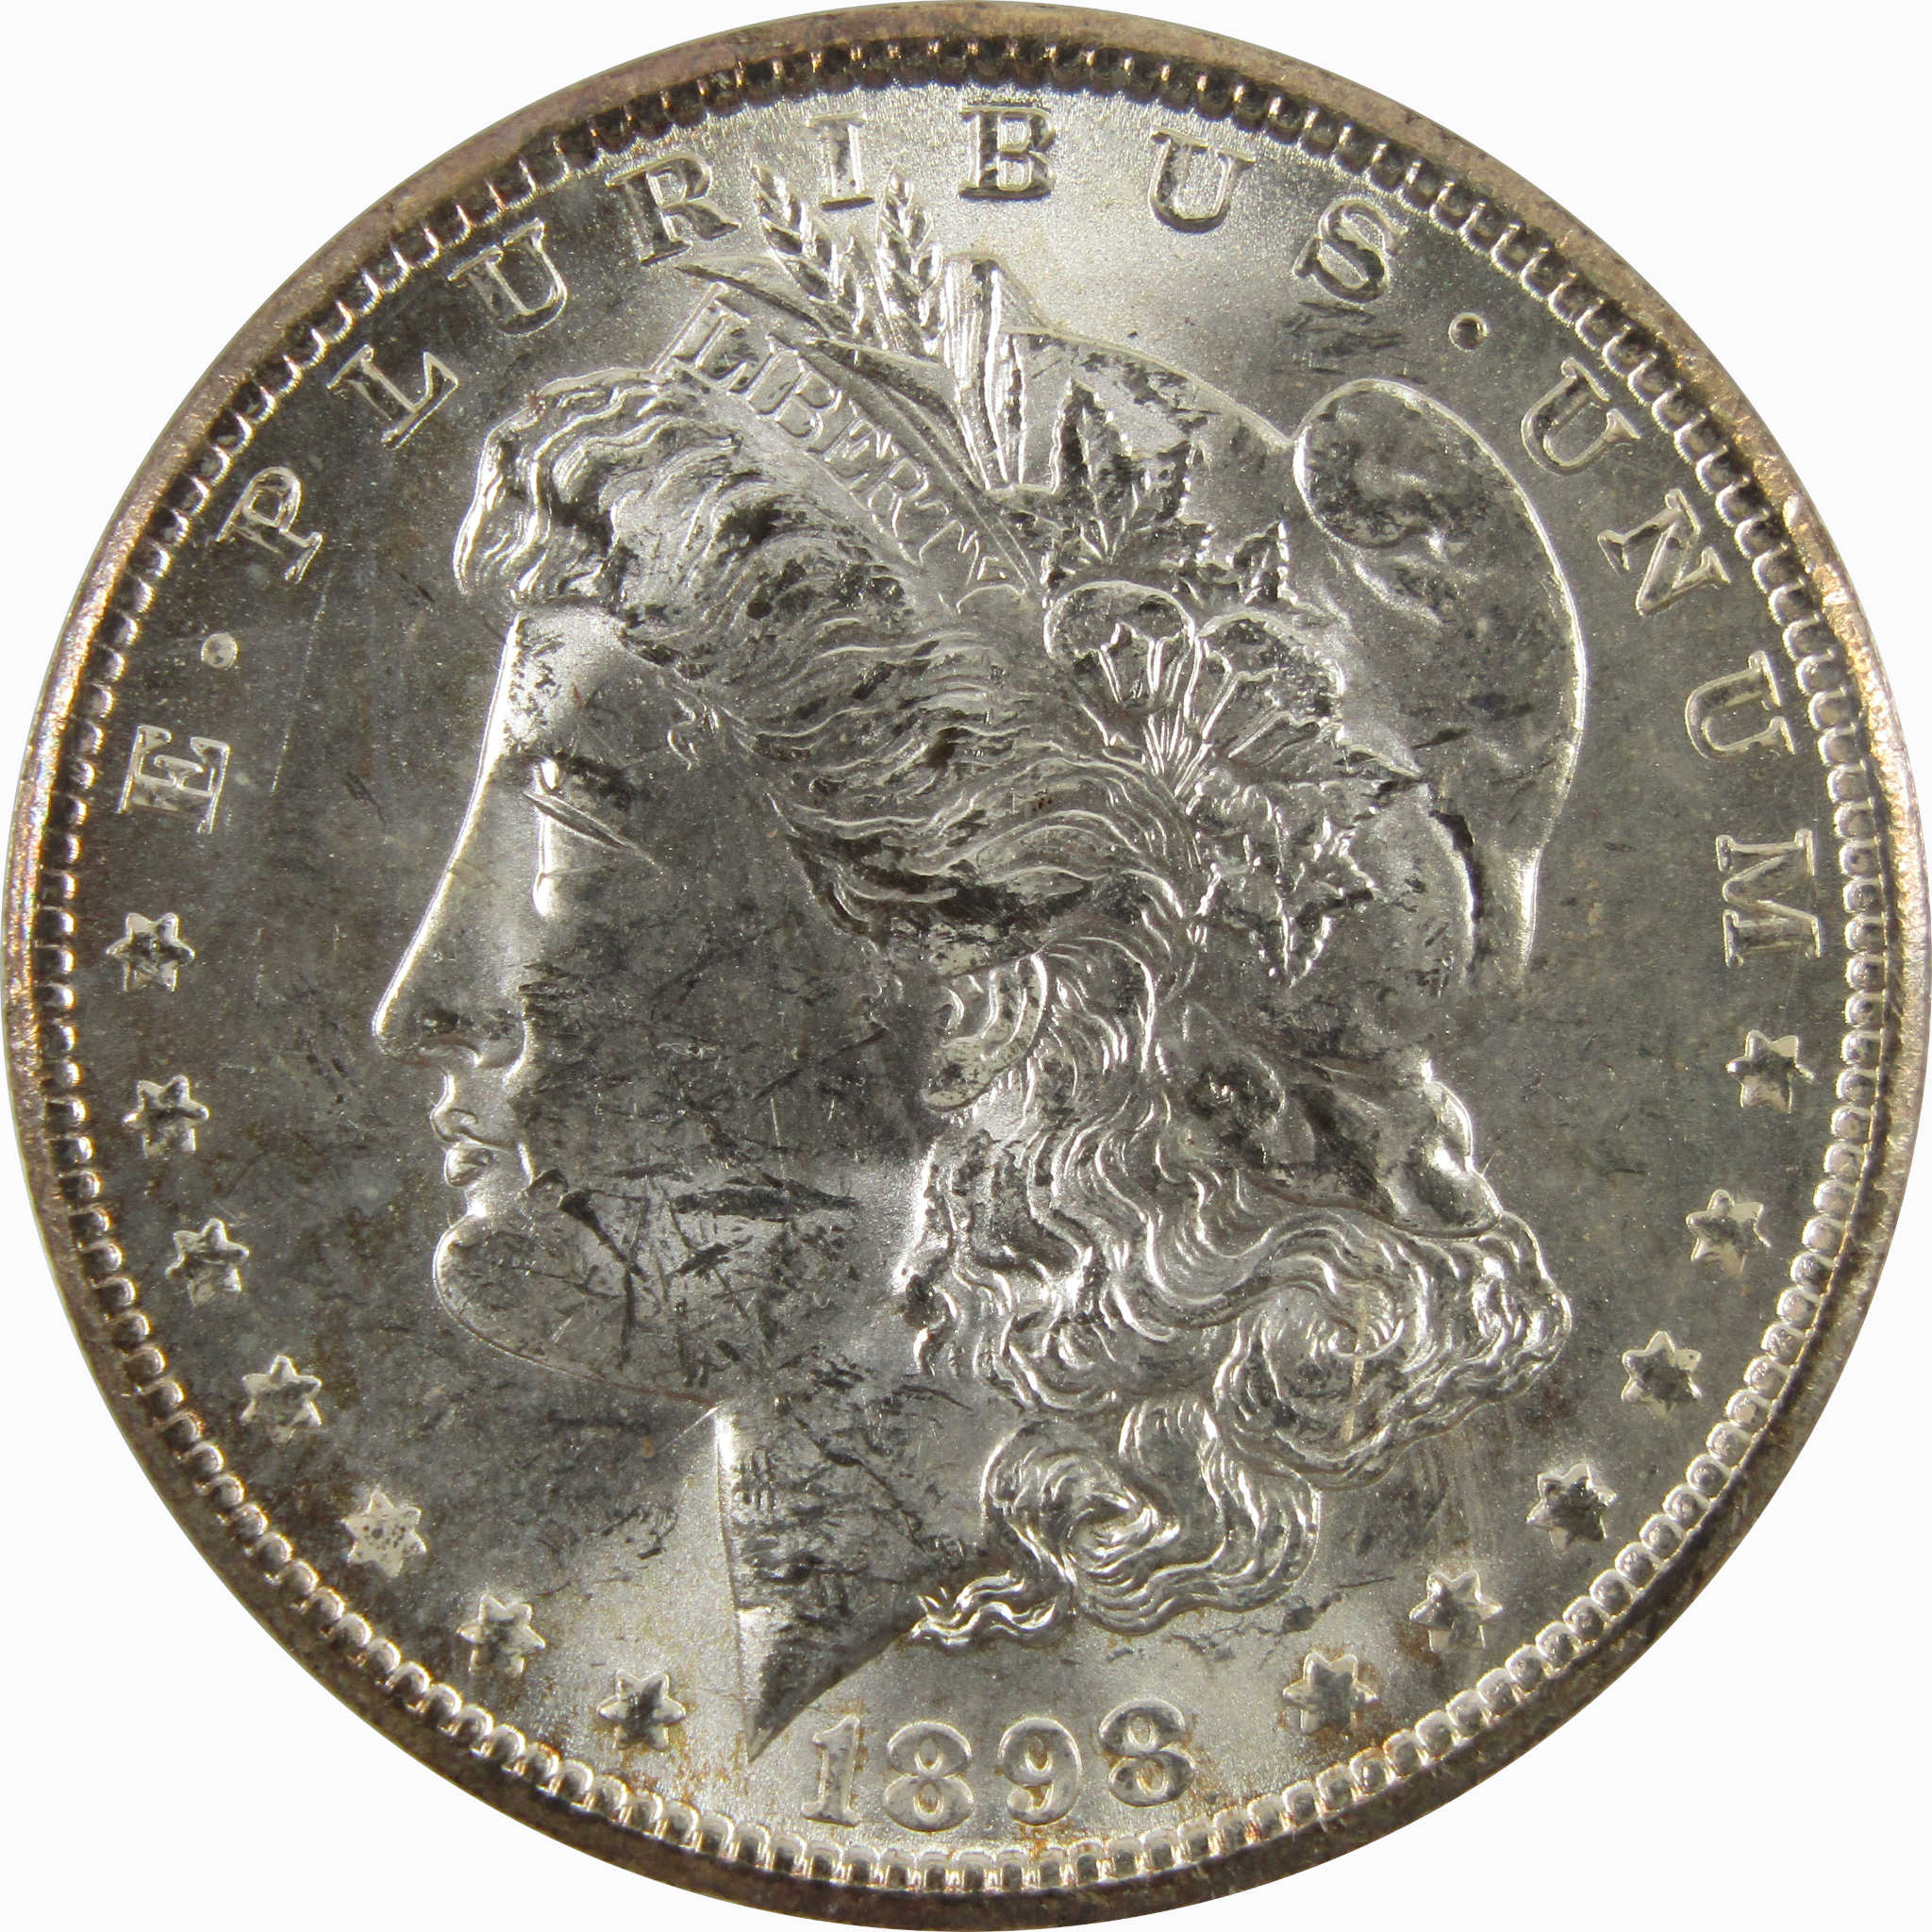 1898 O Morgan Dollar BU Uncirculated 90% Silver $1 Coin SKU:CPC4860 - Morgan coin - Morgan silver dollar - Morgan silver dollar for sale - Profile Coins &amp; Collectibles